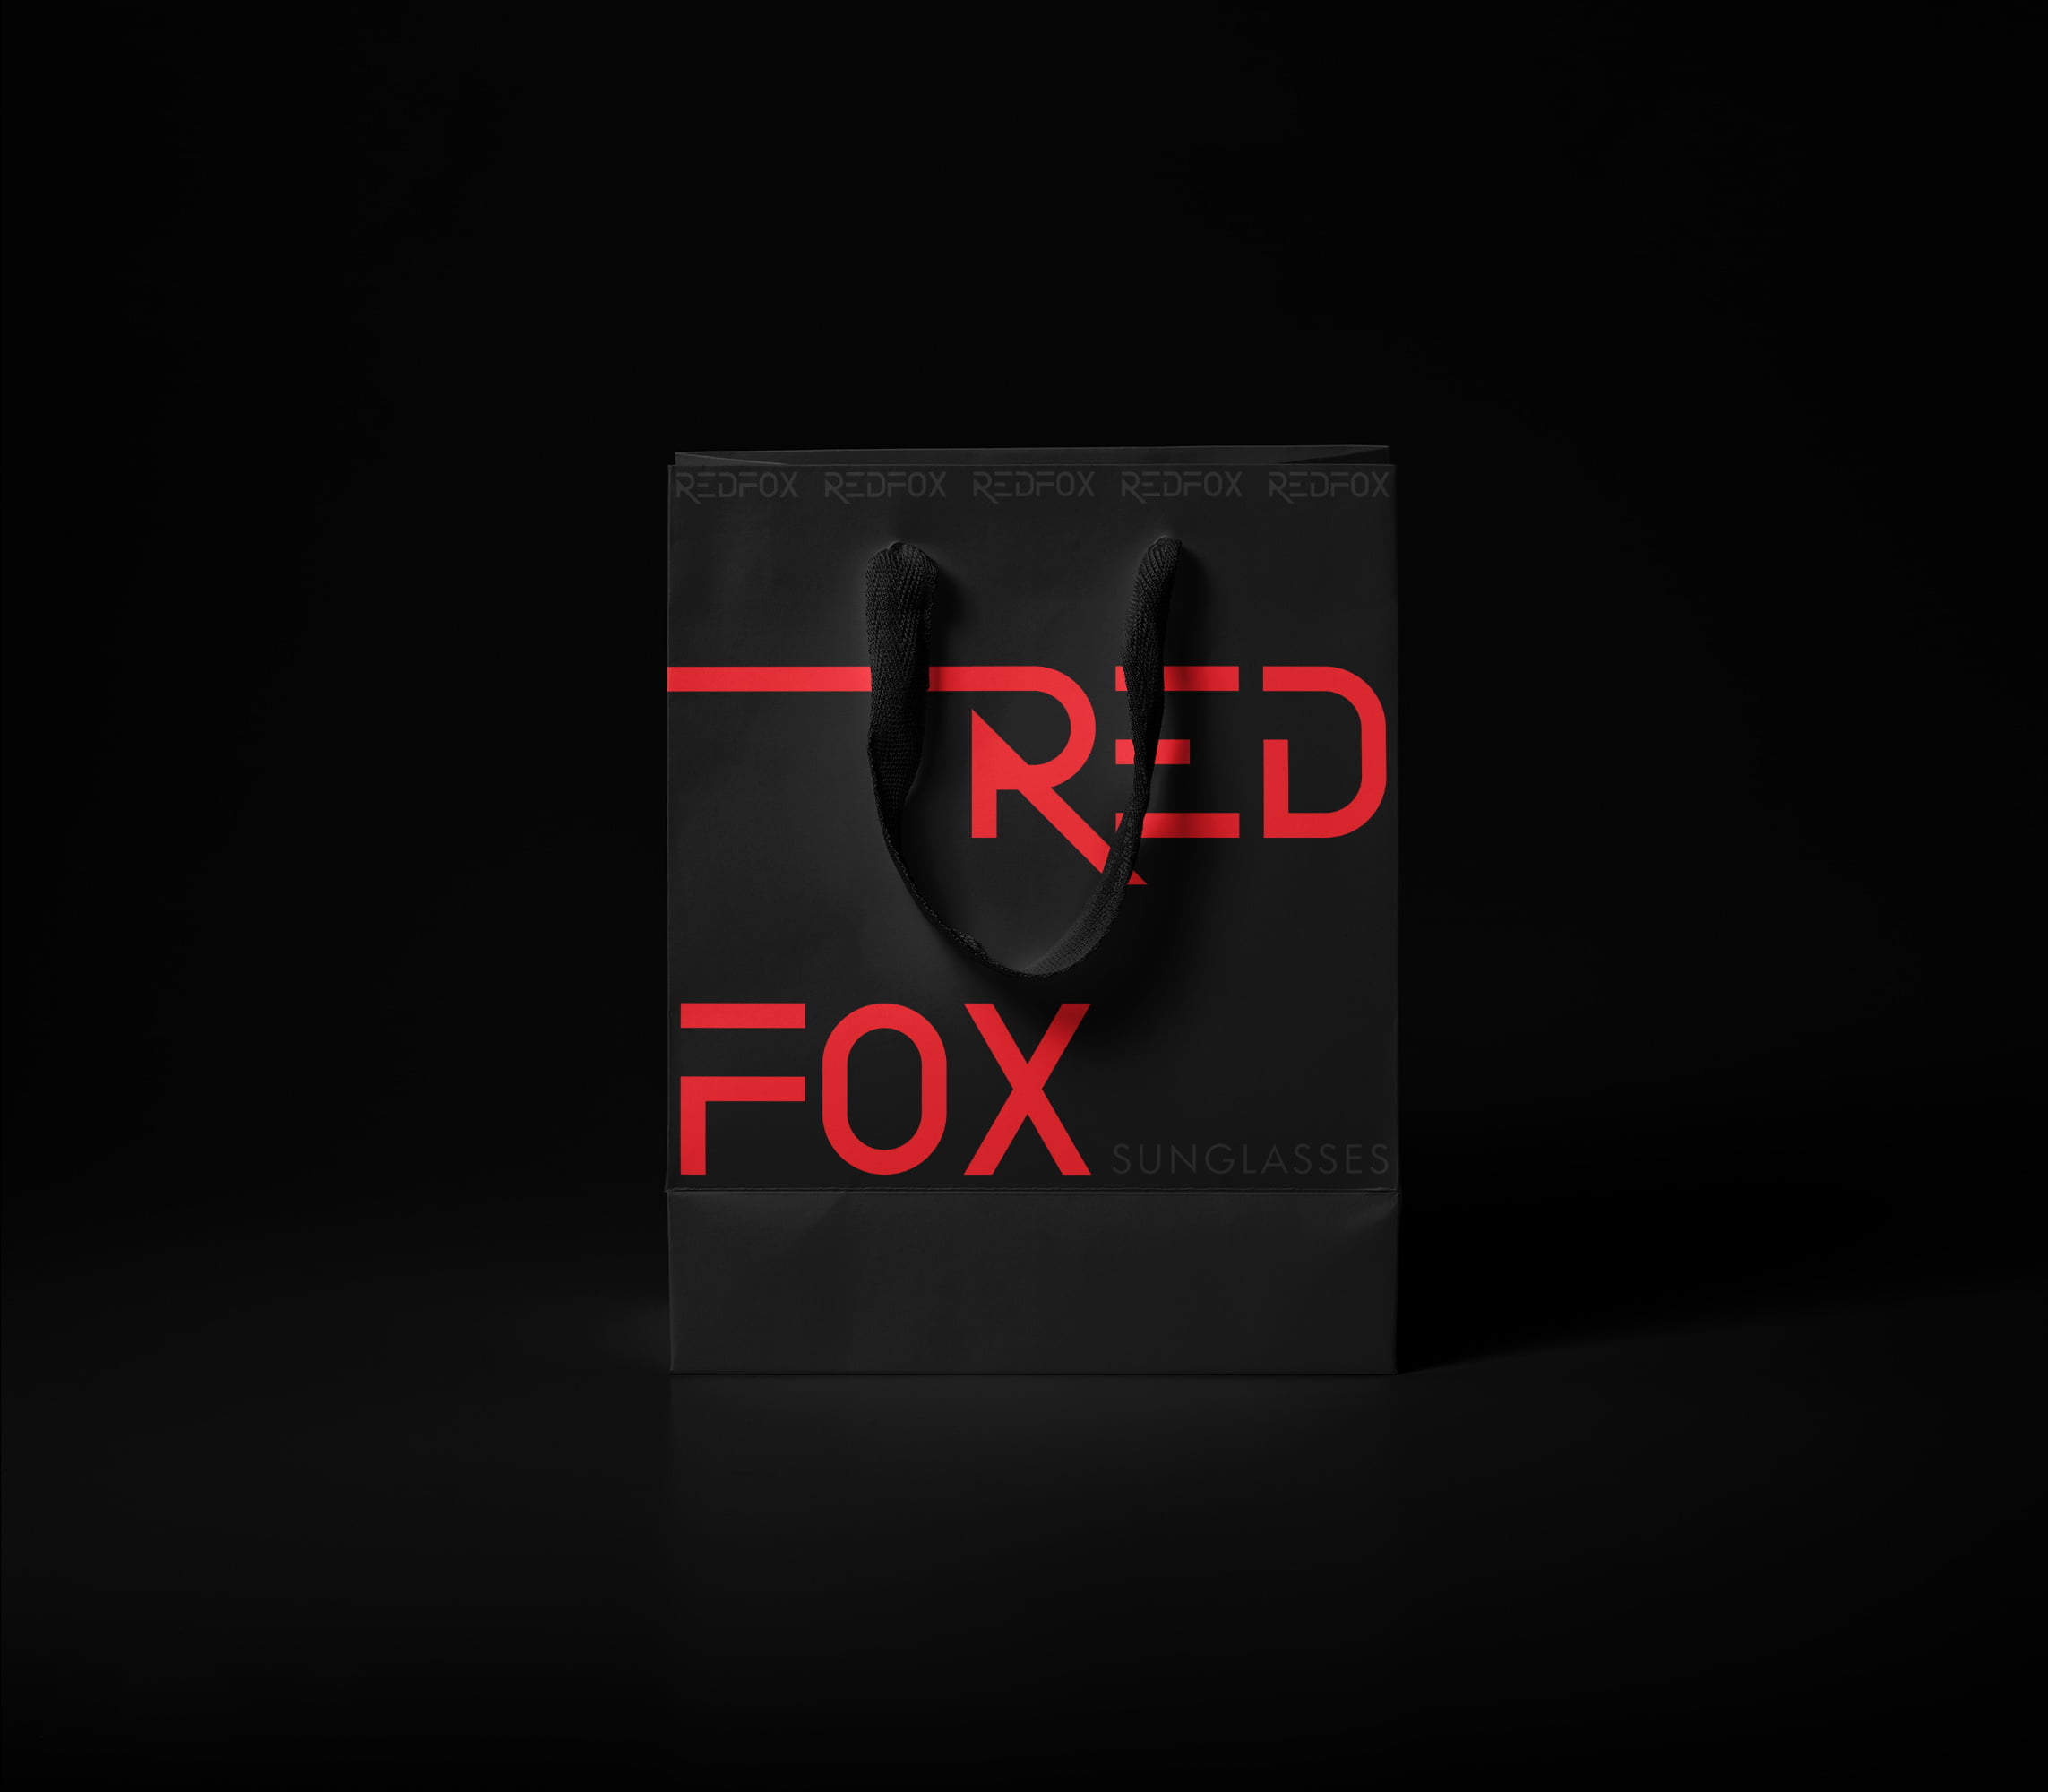 Σχεδιασμός χάρτινης σακούλας για Redfox Sunglasses